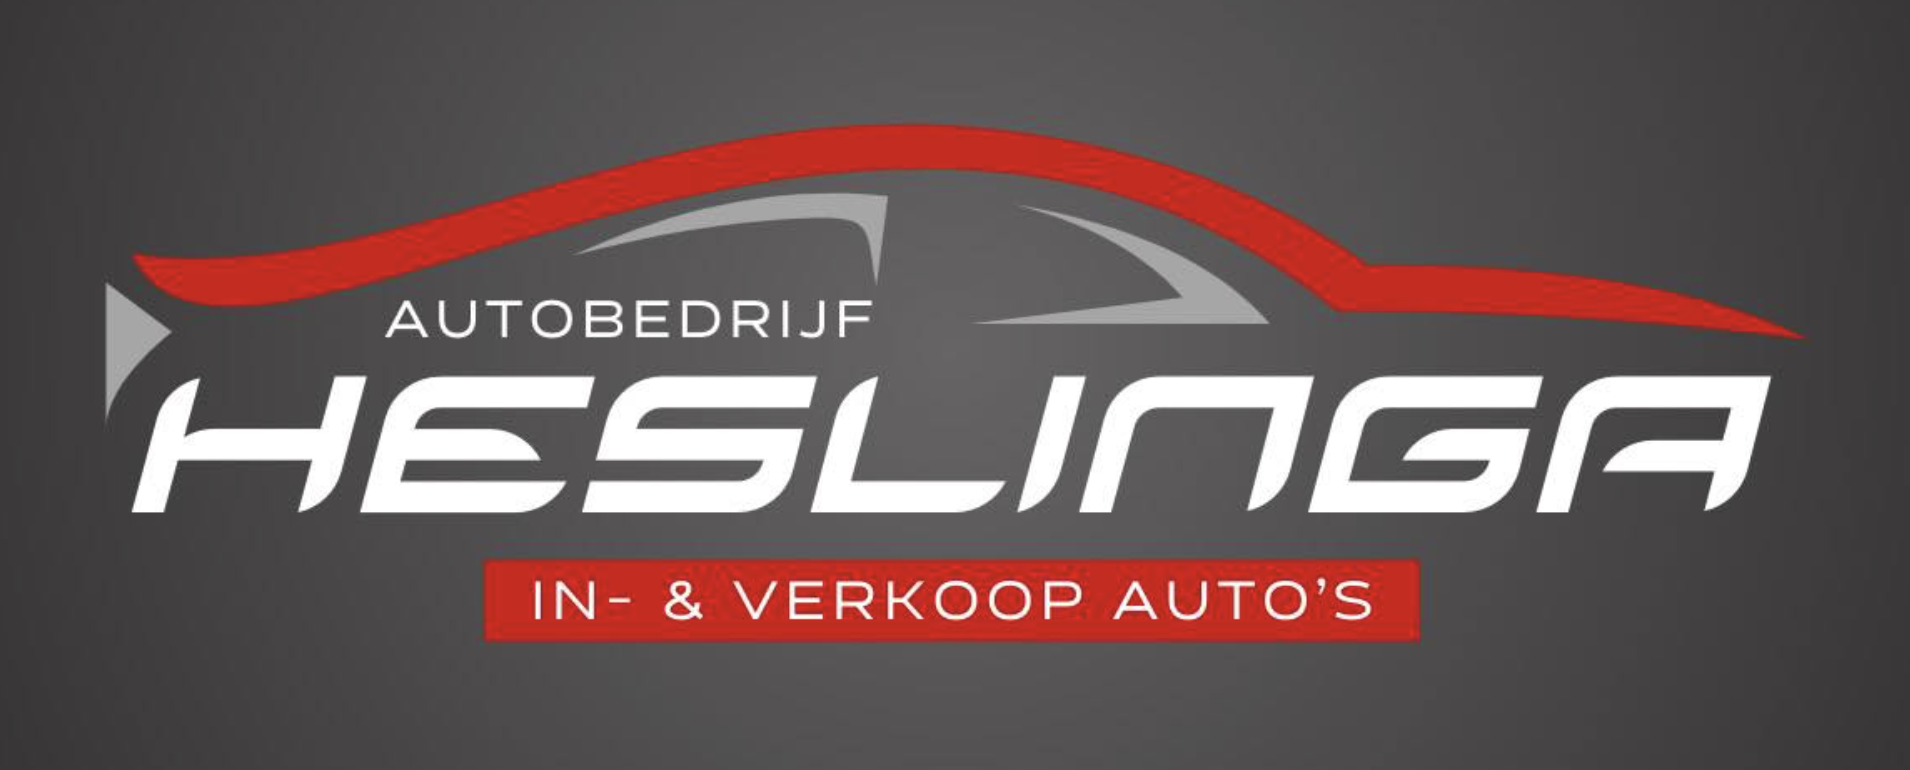 Autobedrijf Heslinga logo